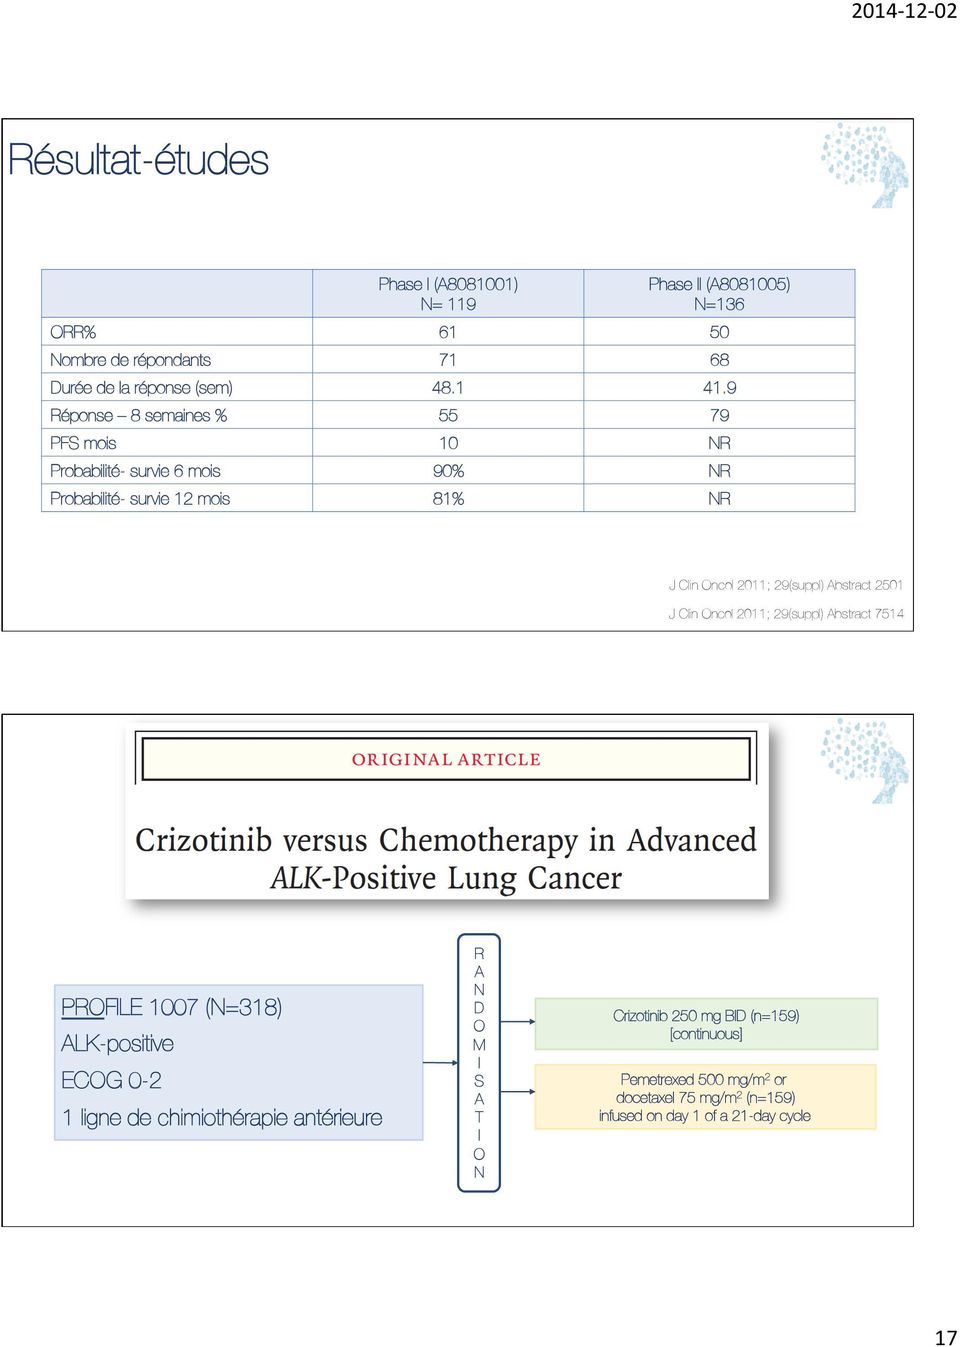 Abstract 2501 J Clin Oncol 2011; 29(suppl) Abstract 7514 PROFILE 1007 (N=318) ALK-positive ECOG 0-2 1 ligne de chimiothérapie antérieure R A N D